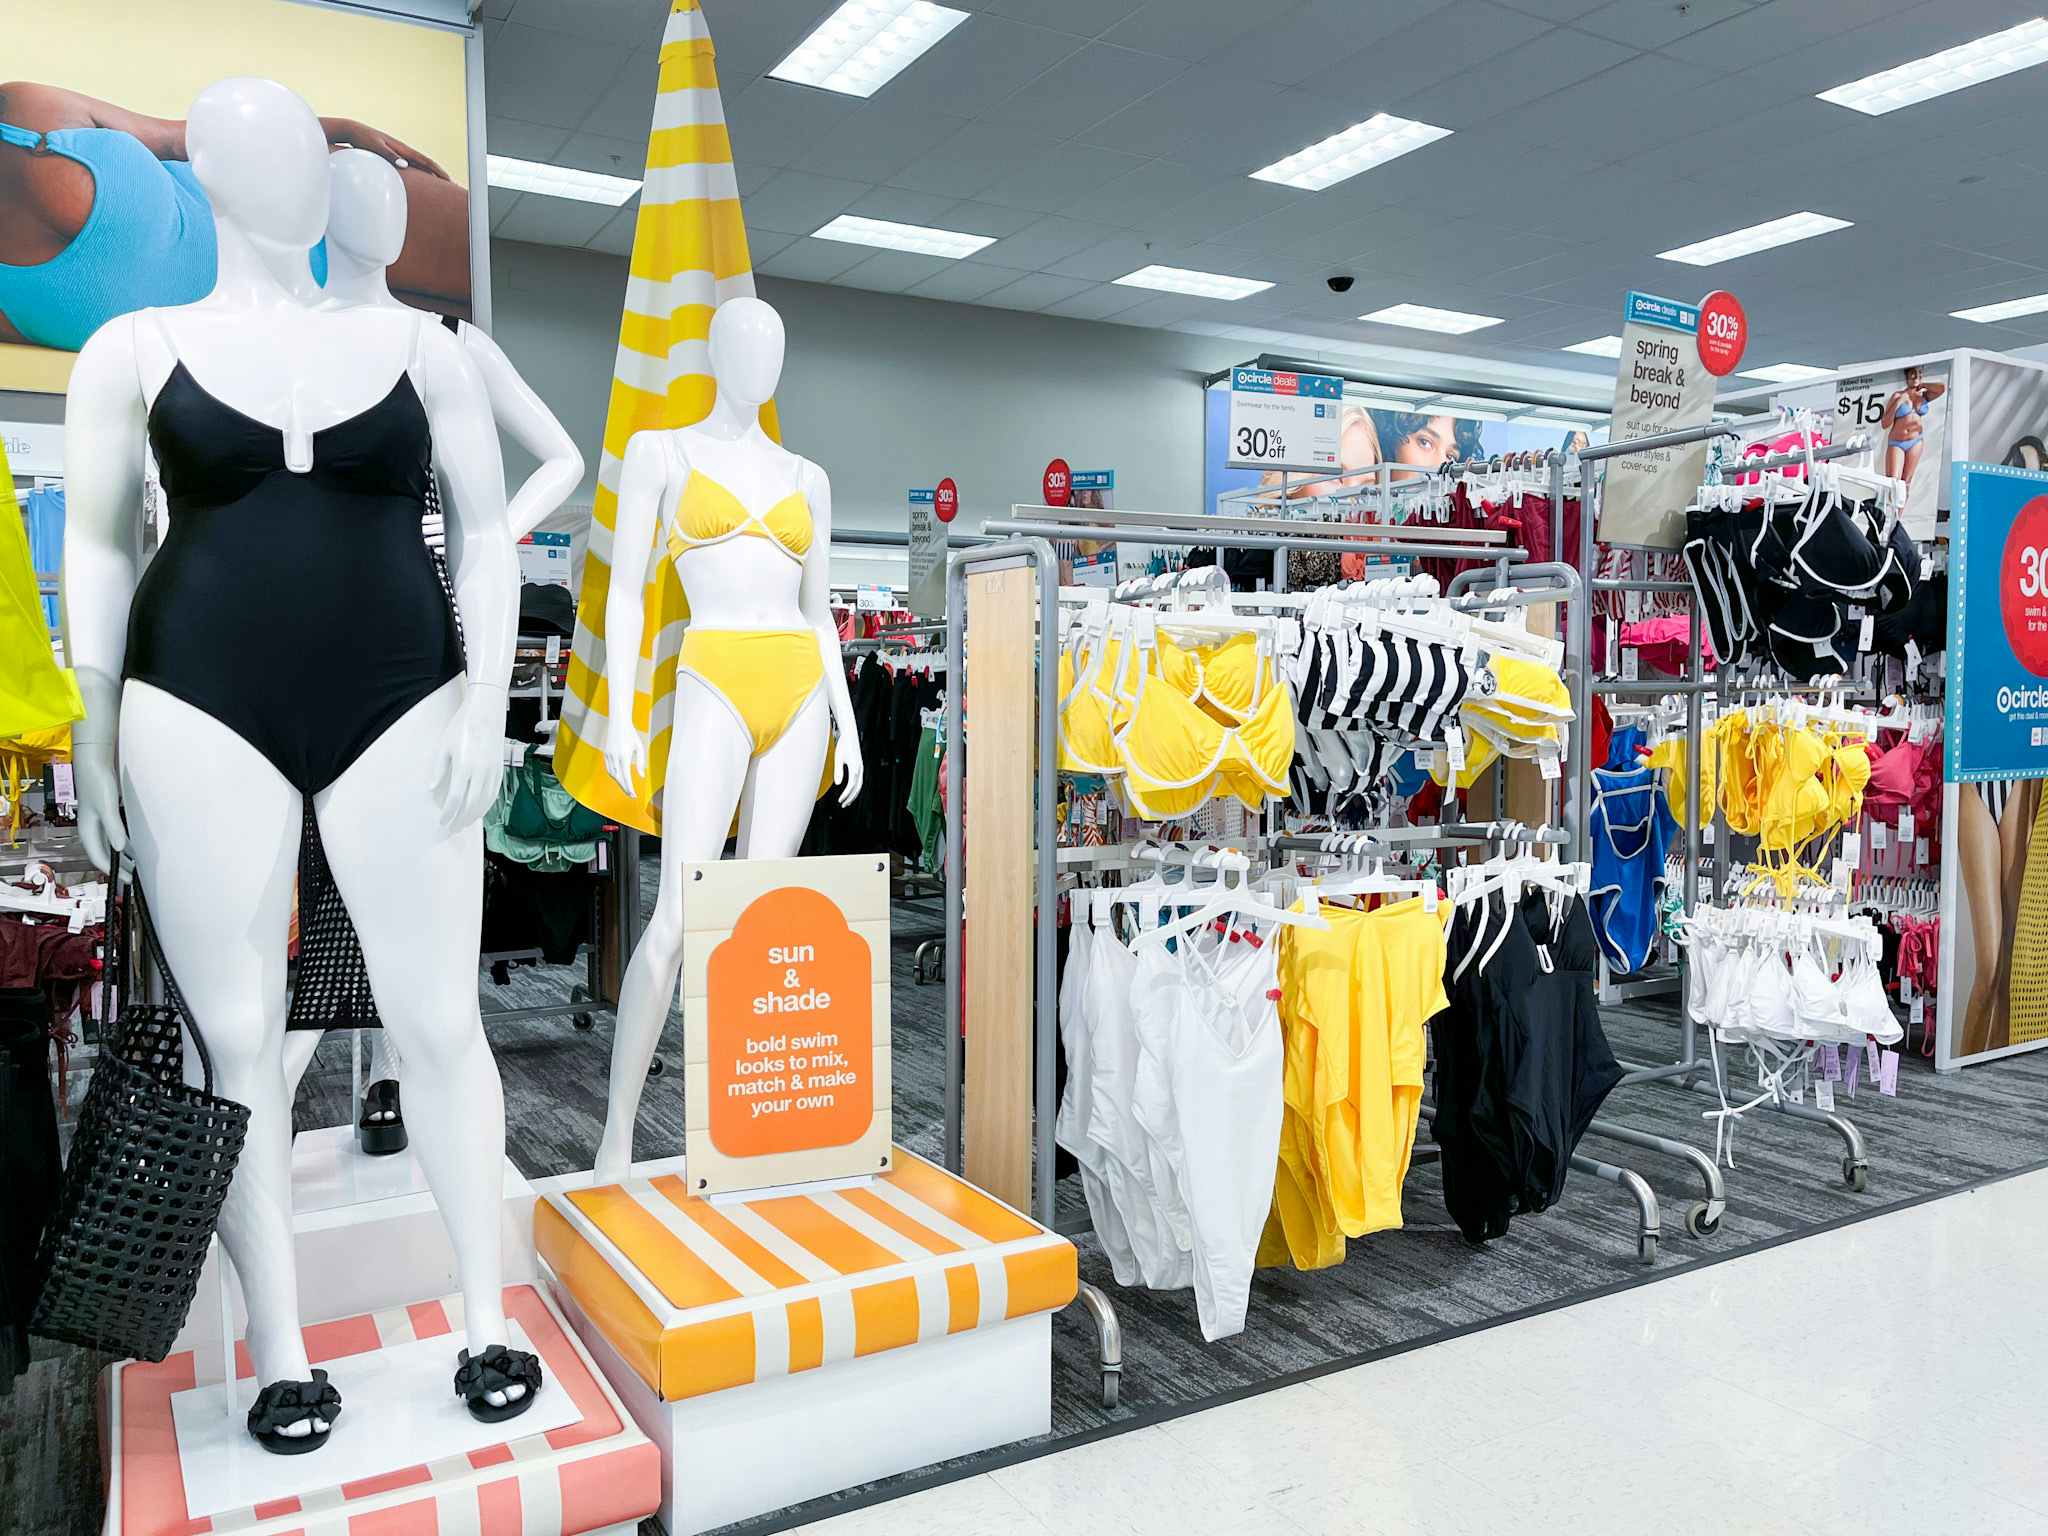 Save 30% on Women's Swimwear at Target — Prices Start at $7.48